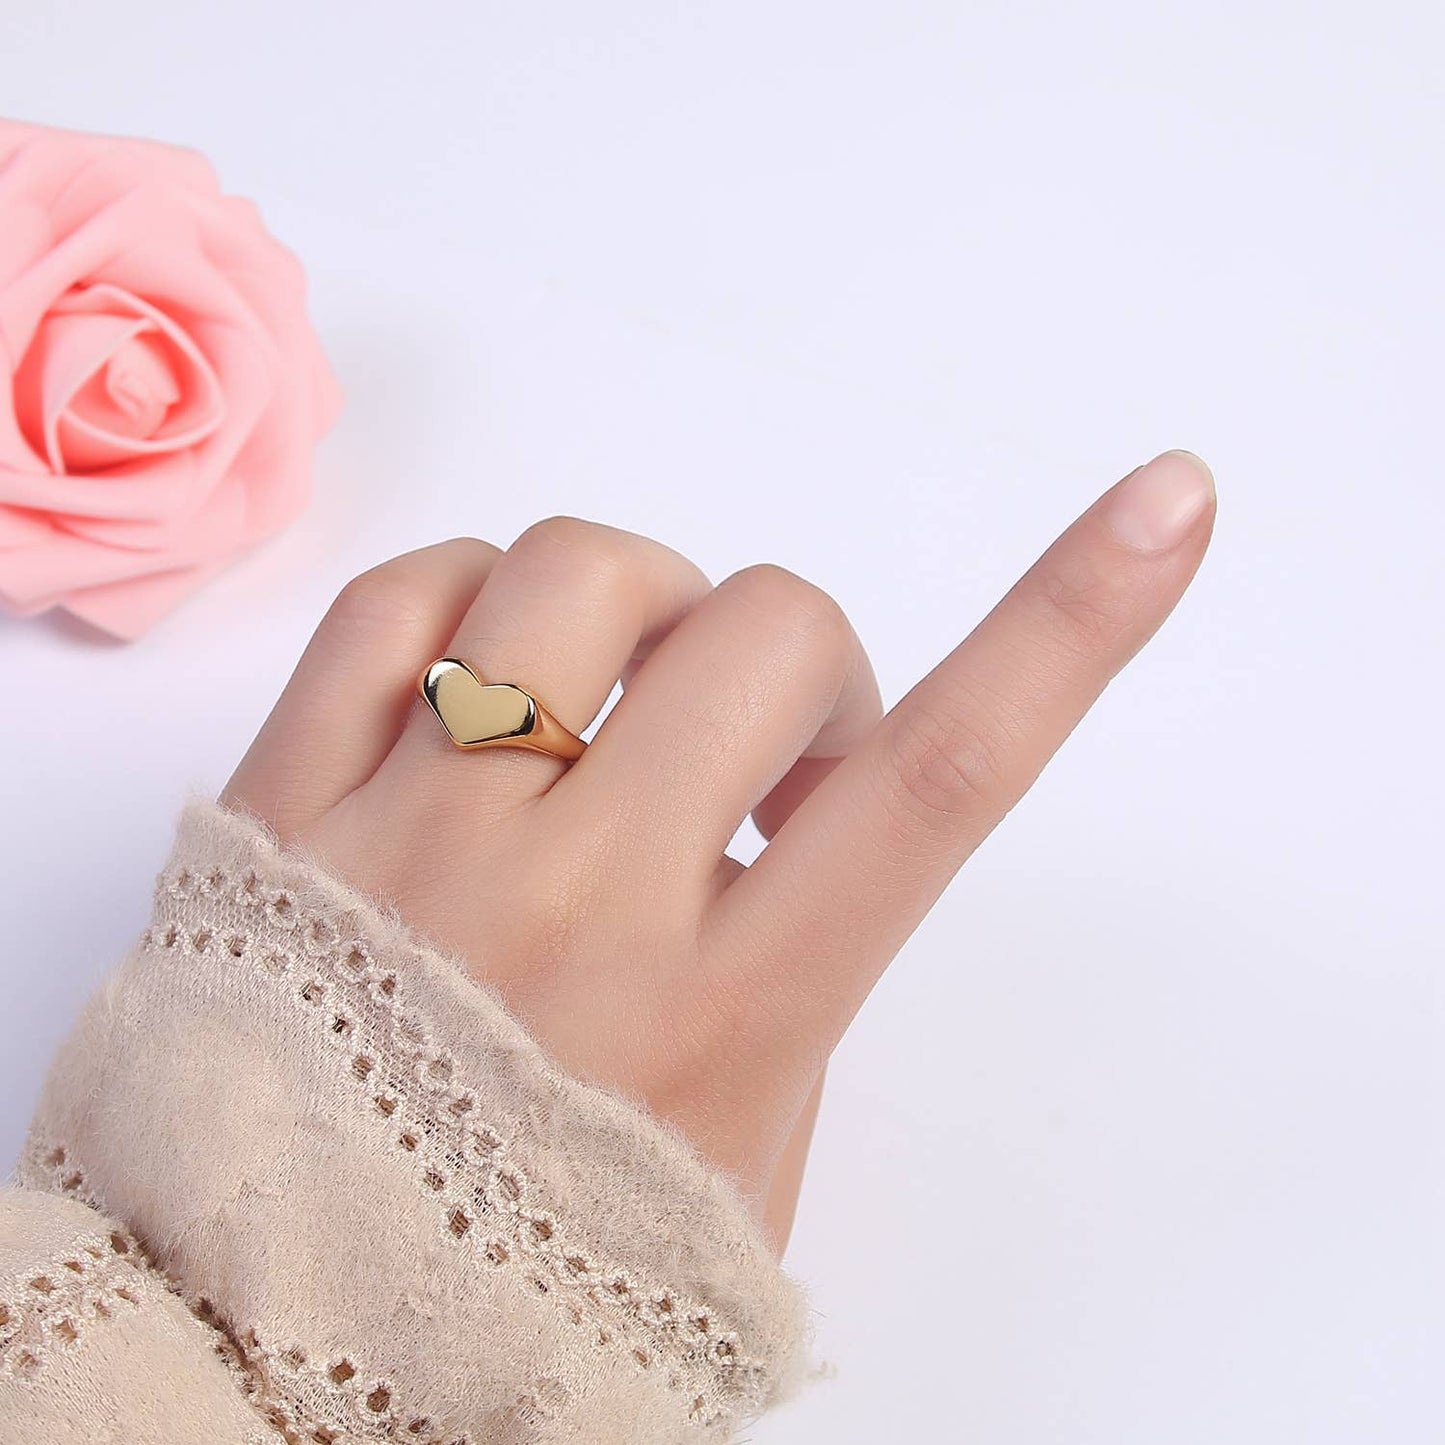 Whispering Love: Plain Gold Loving Valentine Heart Adjustable Signet Ring